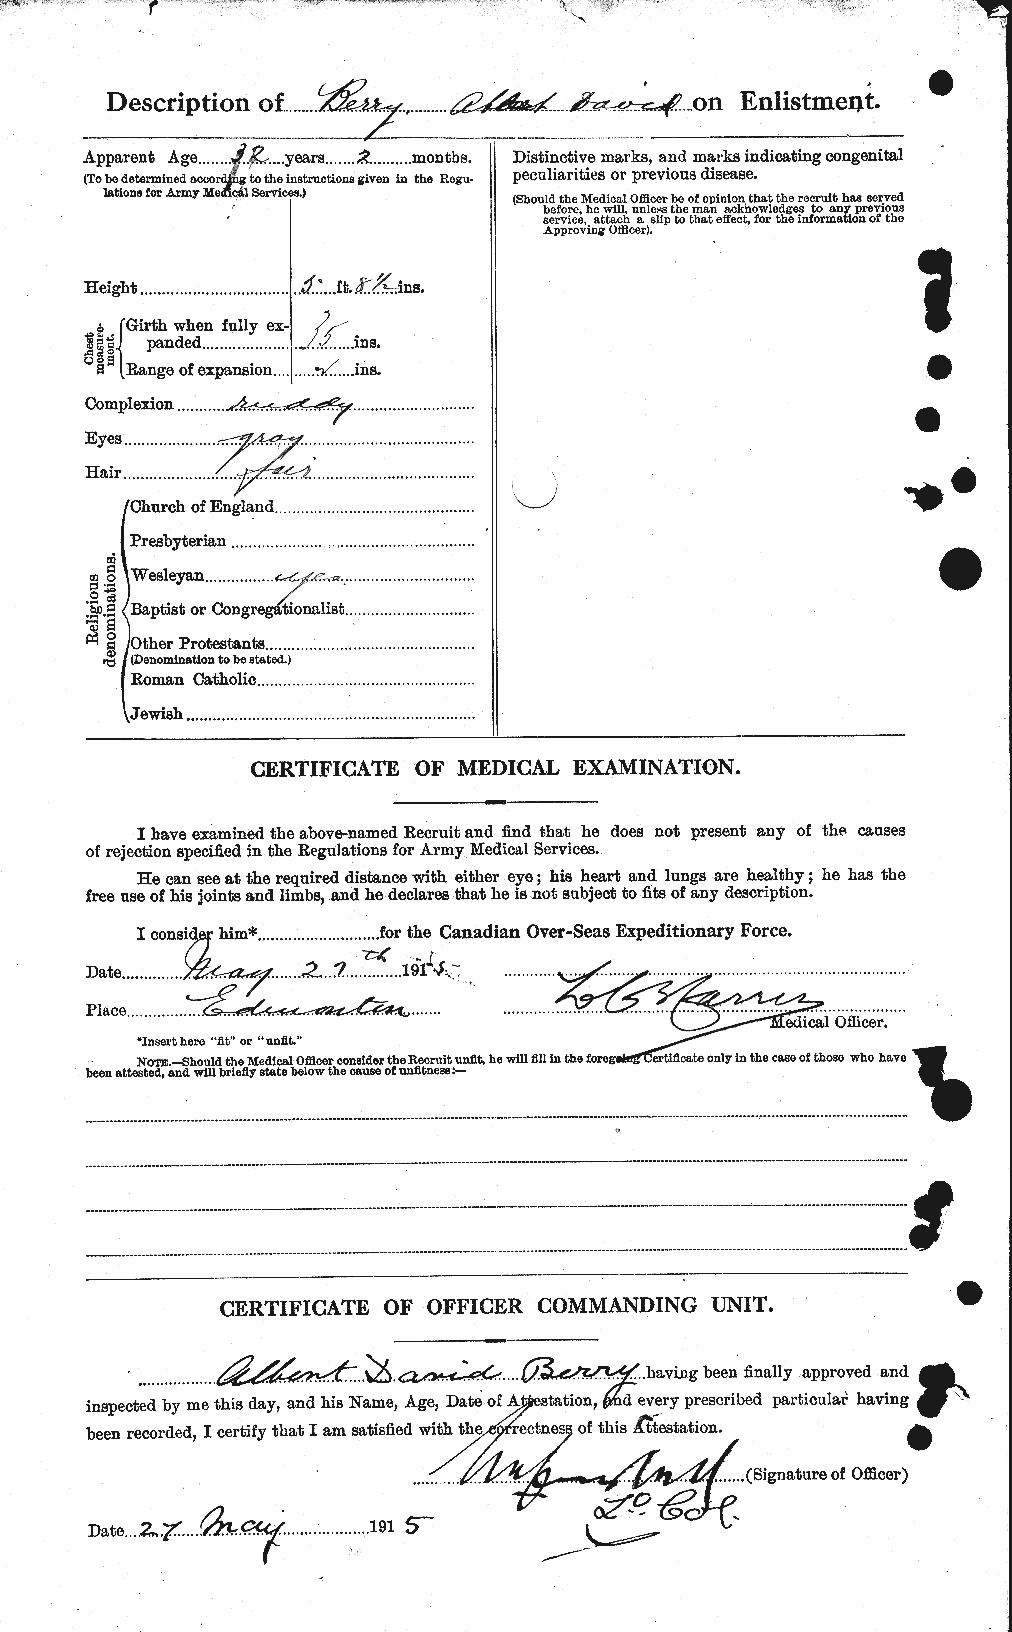 Dossiers du Personnel de la Première Guerre mondiale - CEC 240764b